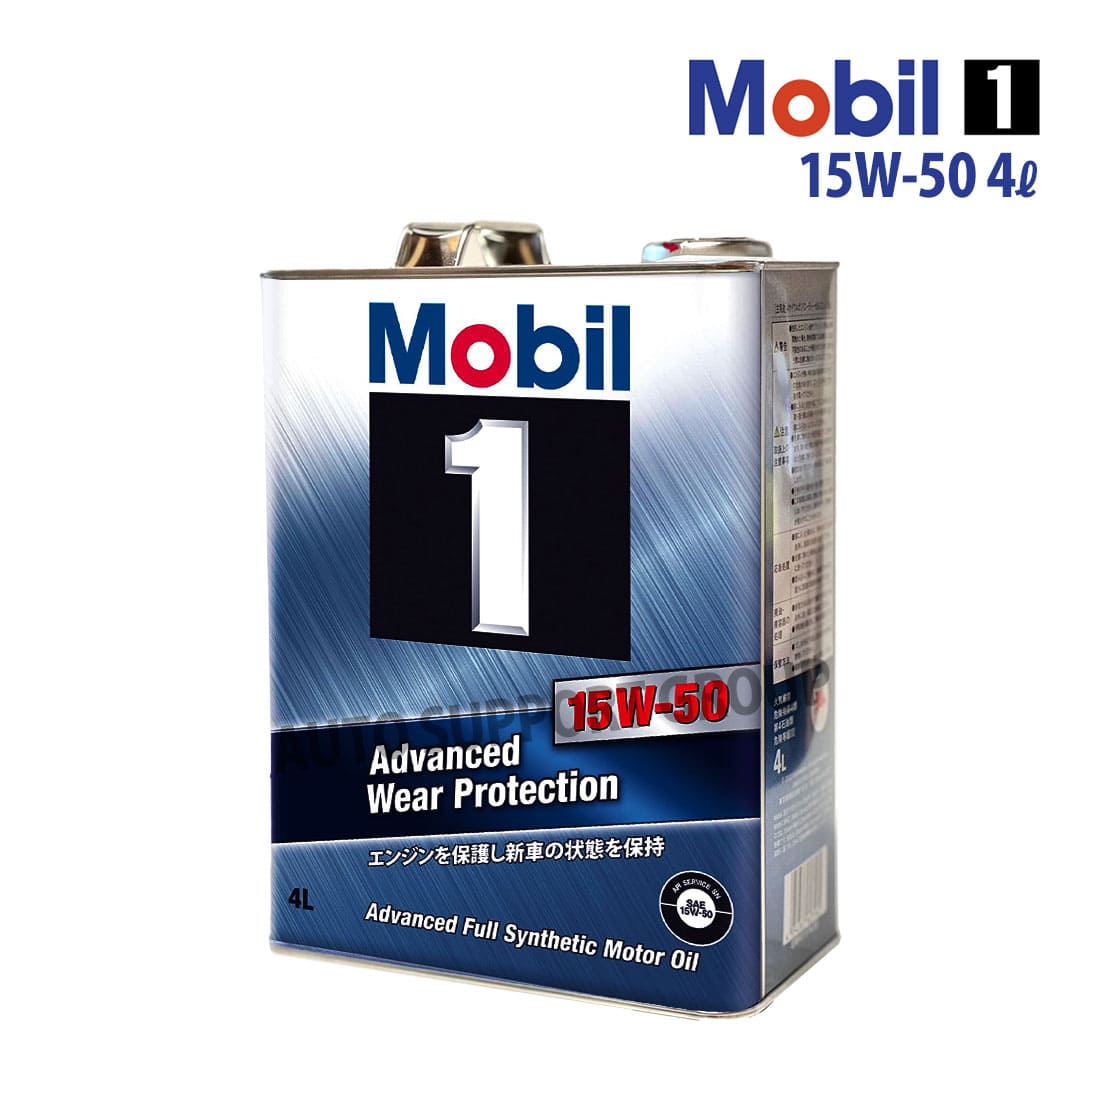 エンジンオイル 15W-50 SN Mobil1 モービル1 4L缶 (4リットル) : ys 